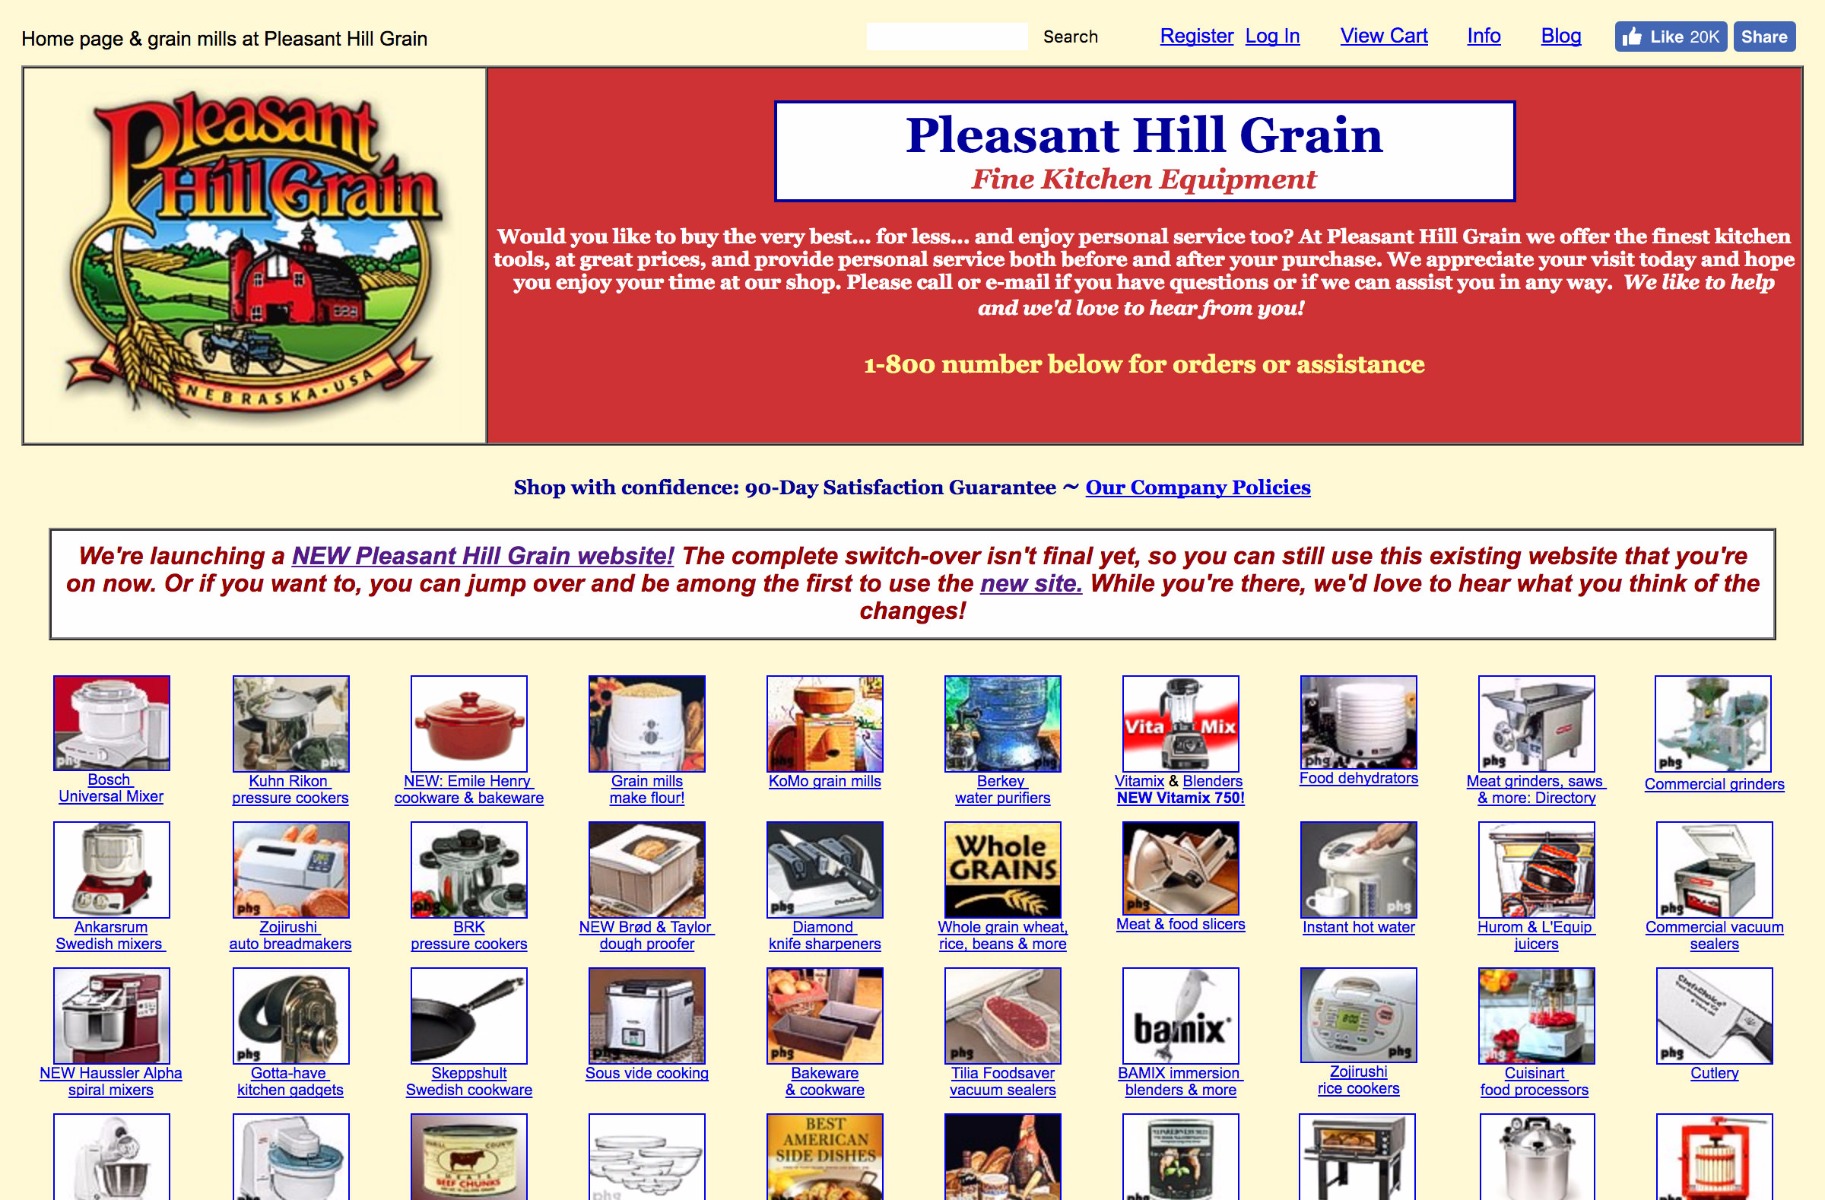 PleasantHillGrain.com website